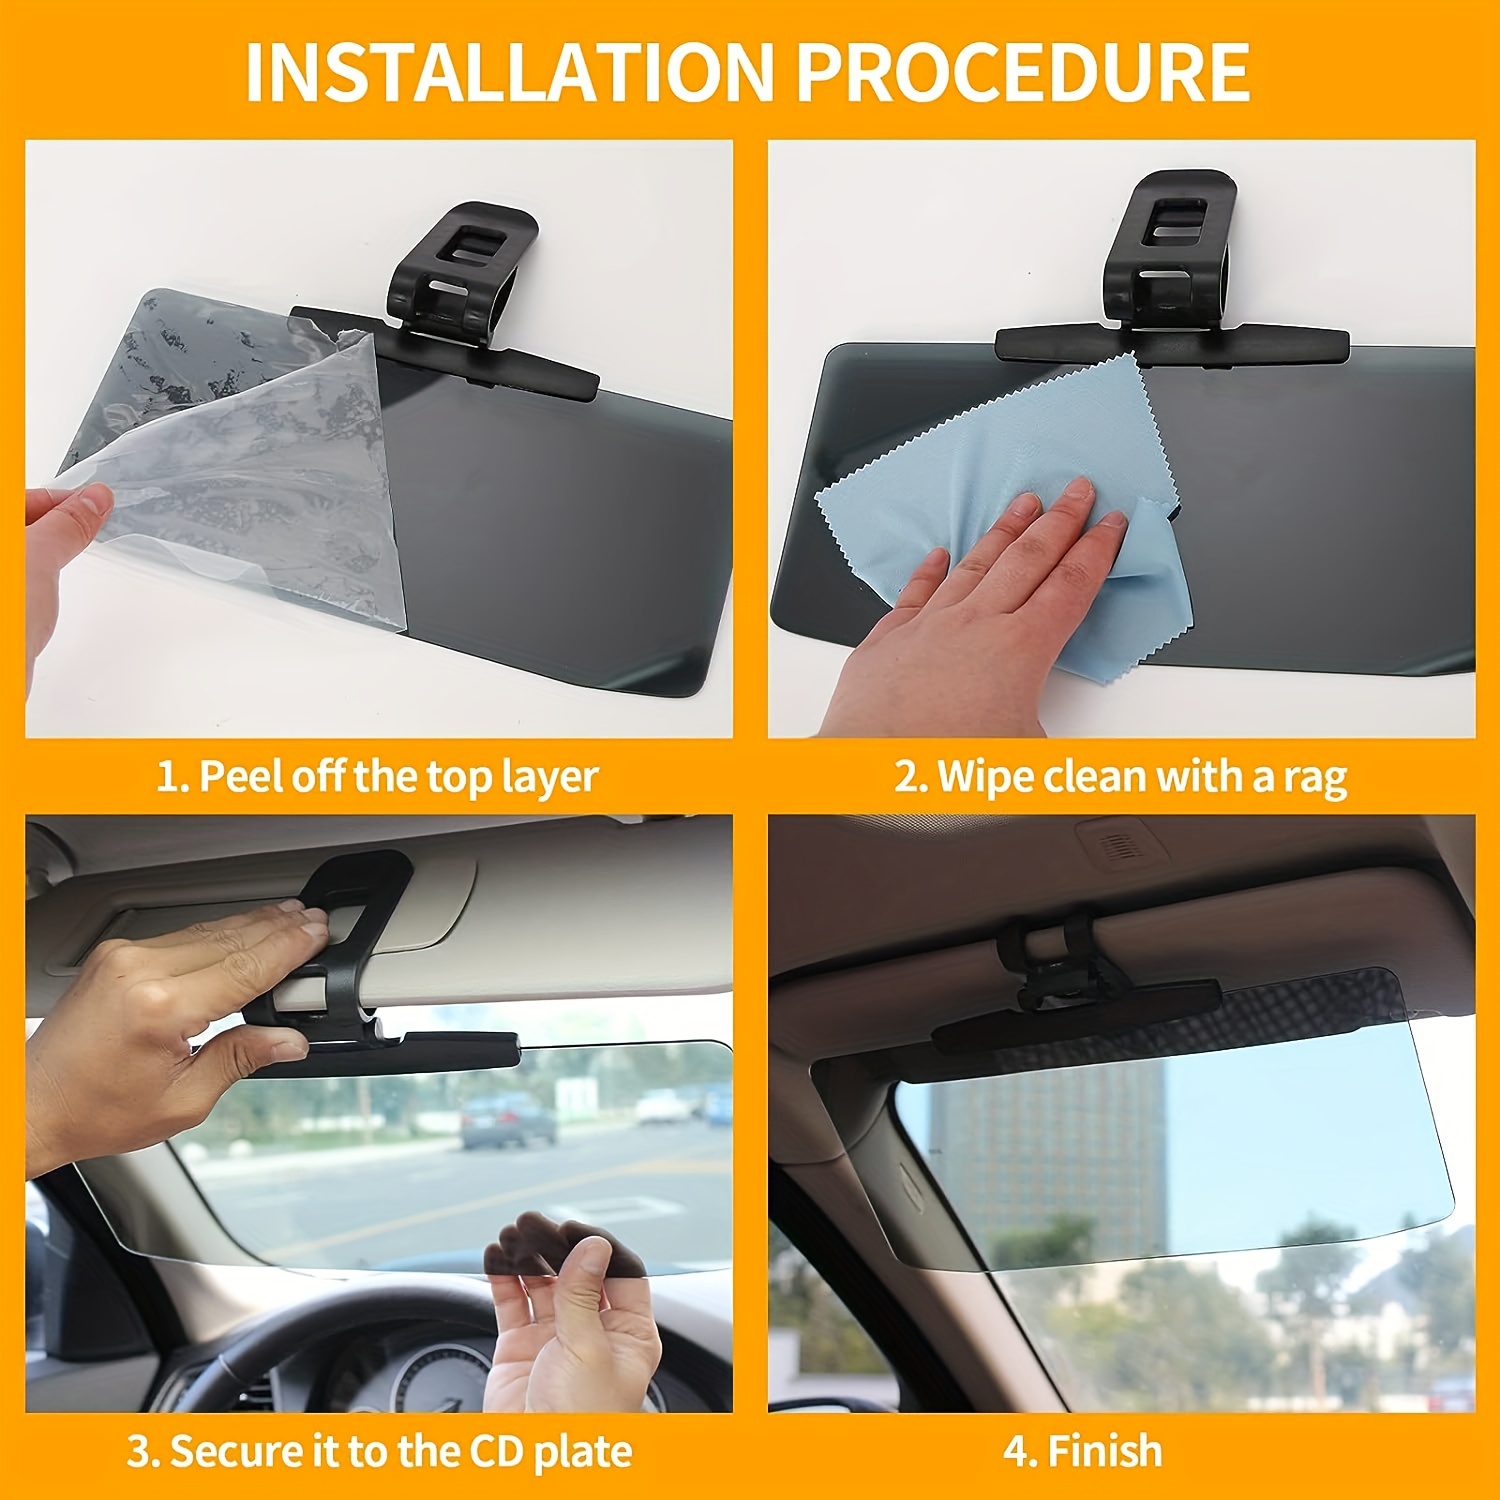 Car Sun Visor Extension Glare Reducer - Standard item at